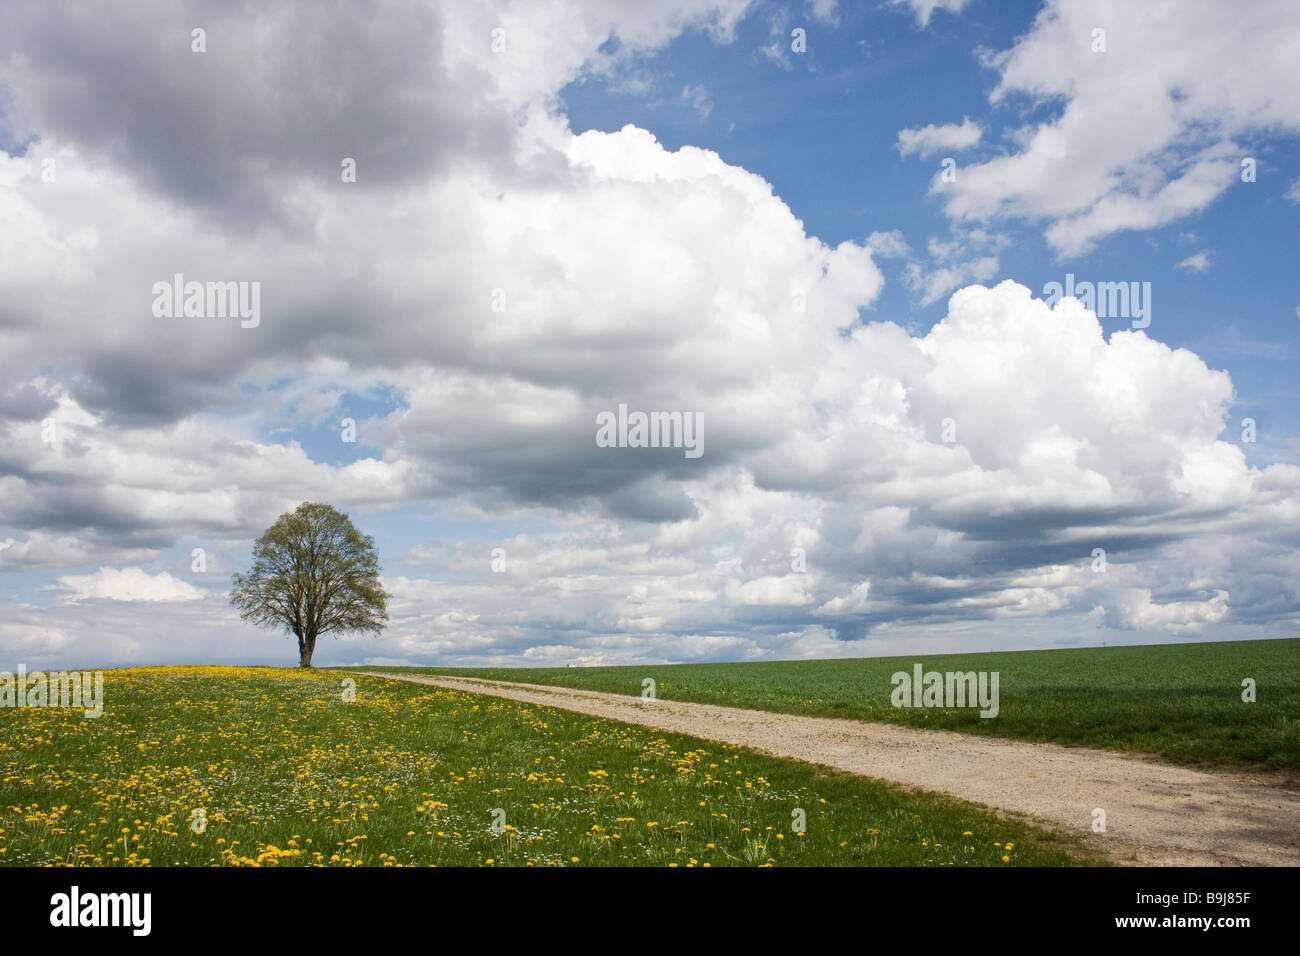 Baum steht neben einem Weg in einem Feld von Löwenzahn unter blauem Himmel mit Wolken im Frühjahr Stockfoto